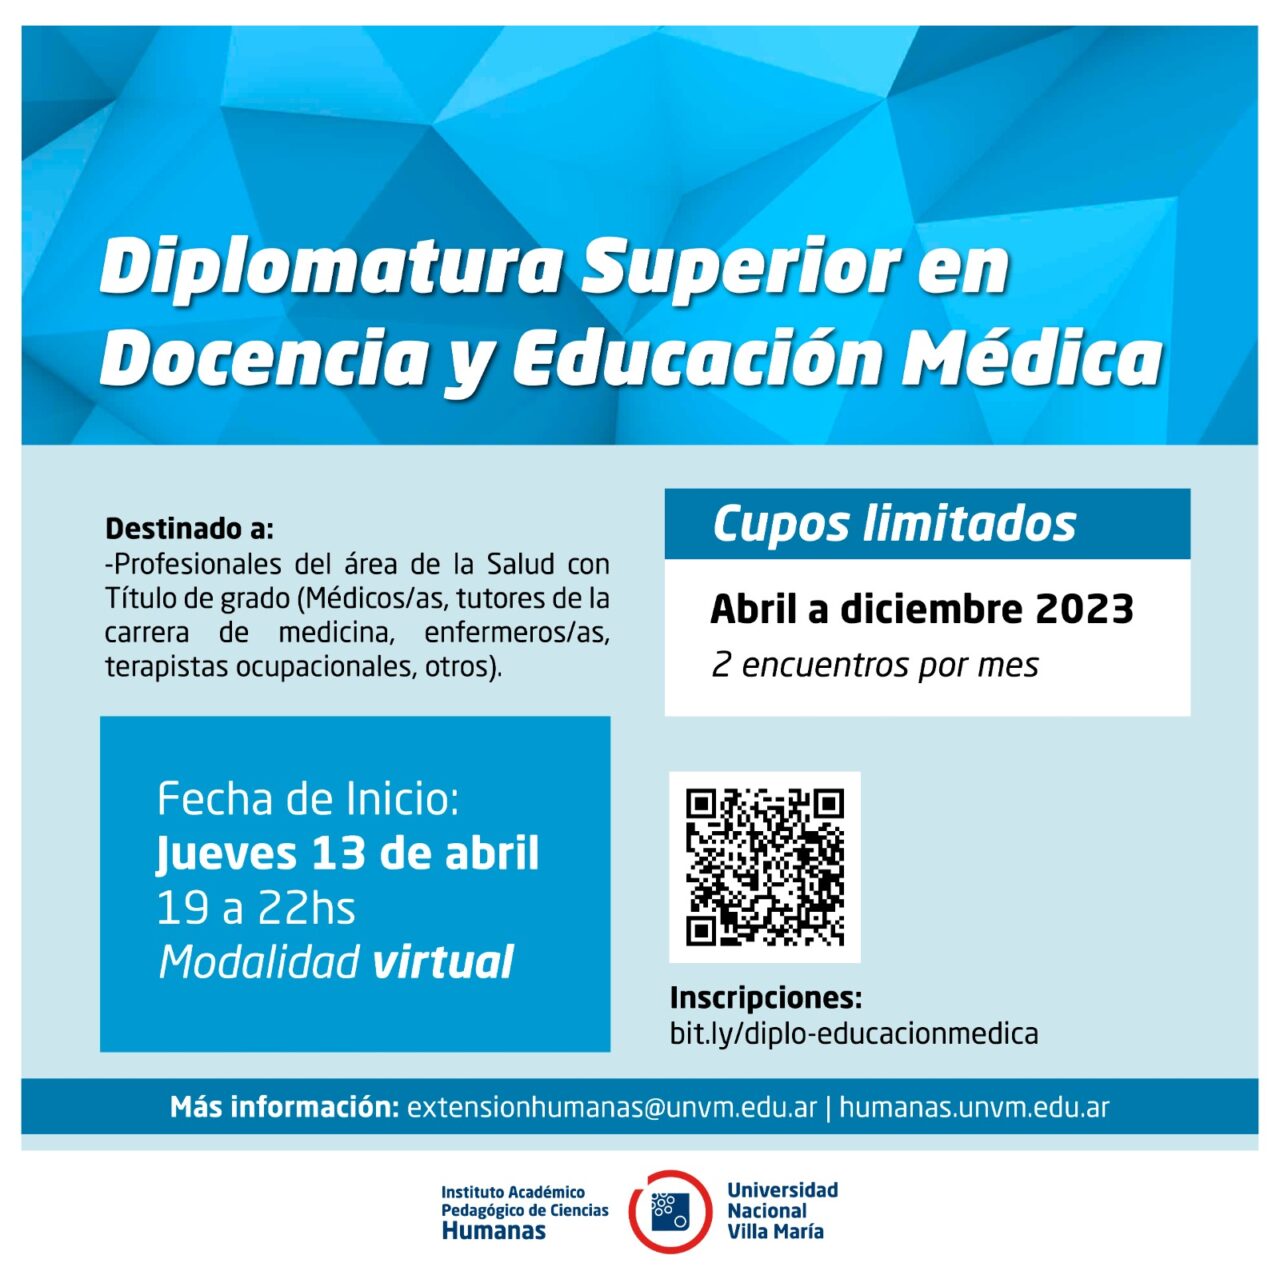 Inscripciones abiertas para la Diplomatura Superior en Docencia y Educación Médica